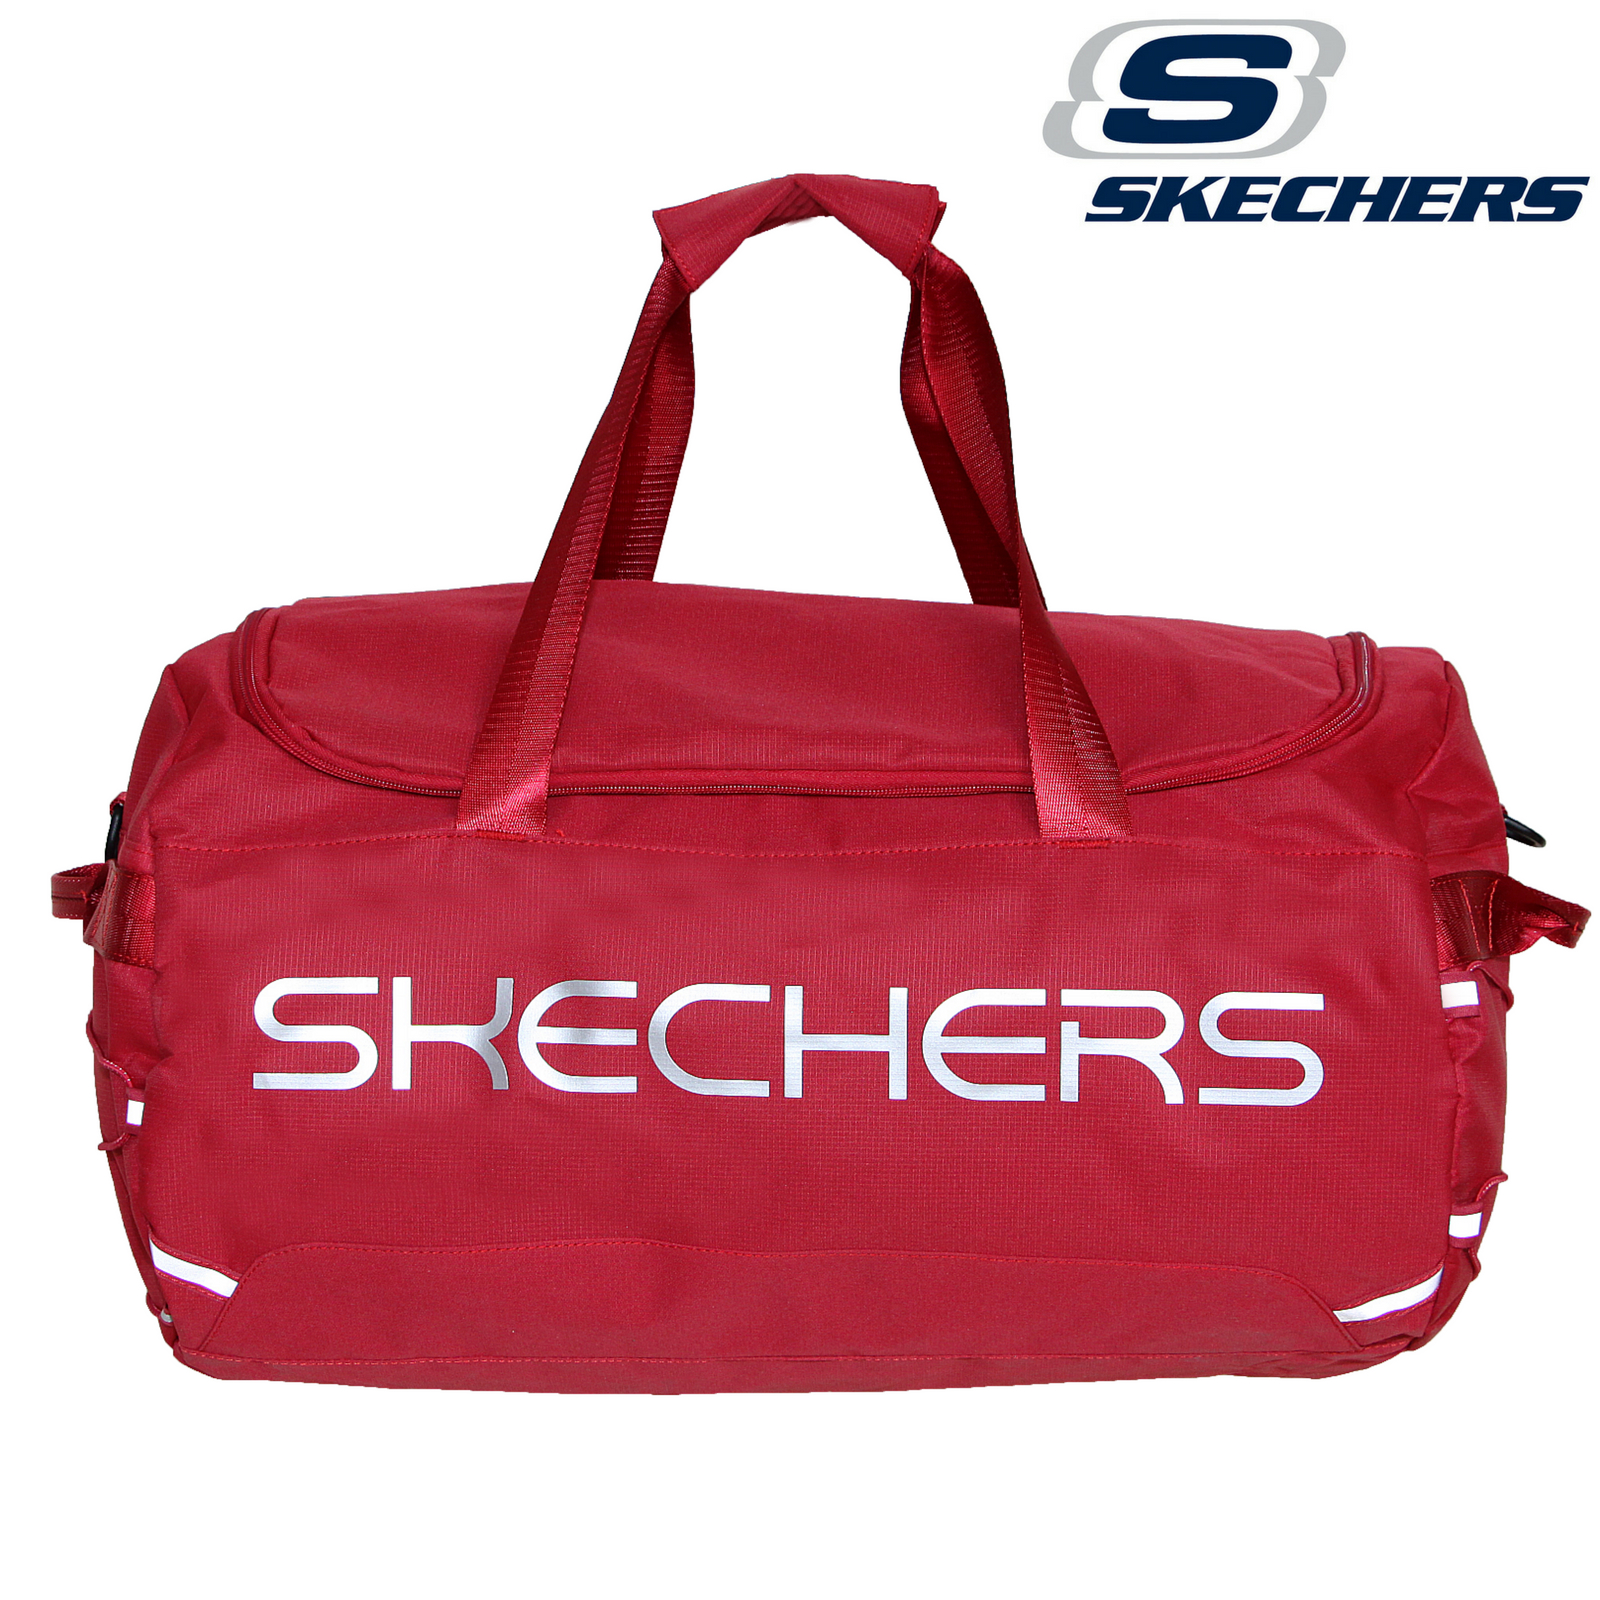 skechers travel bag